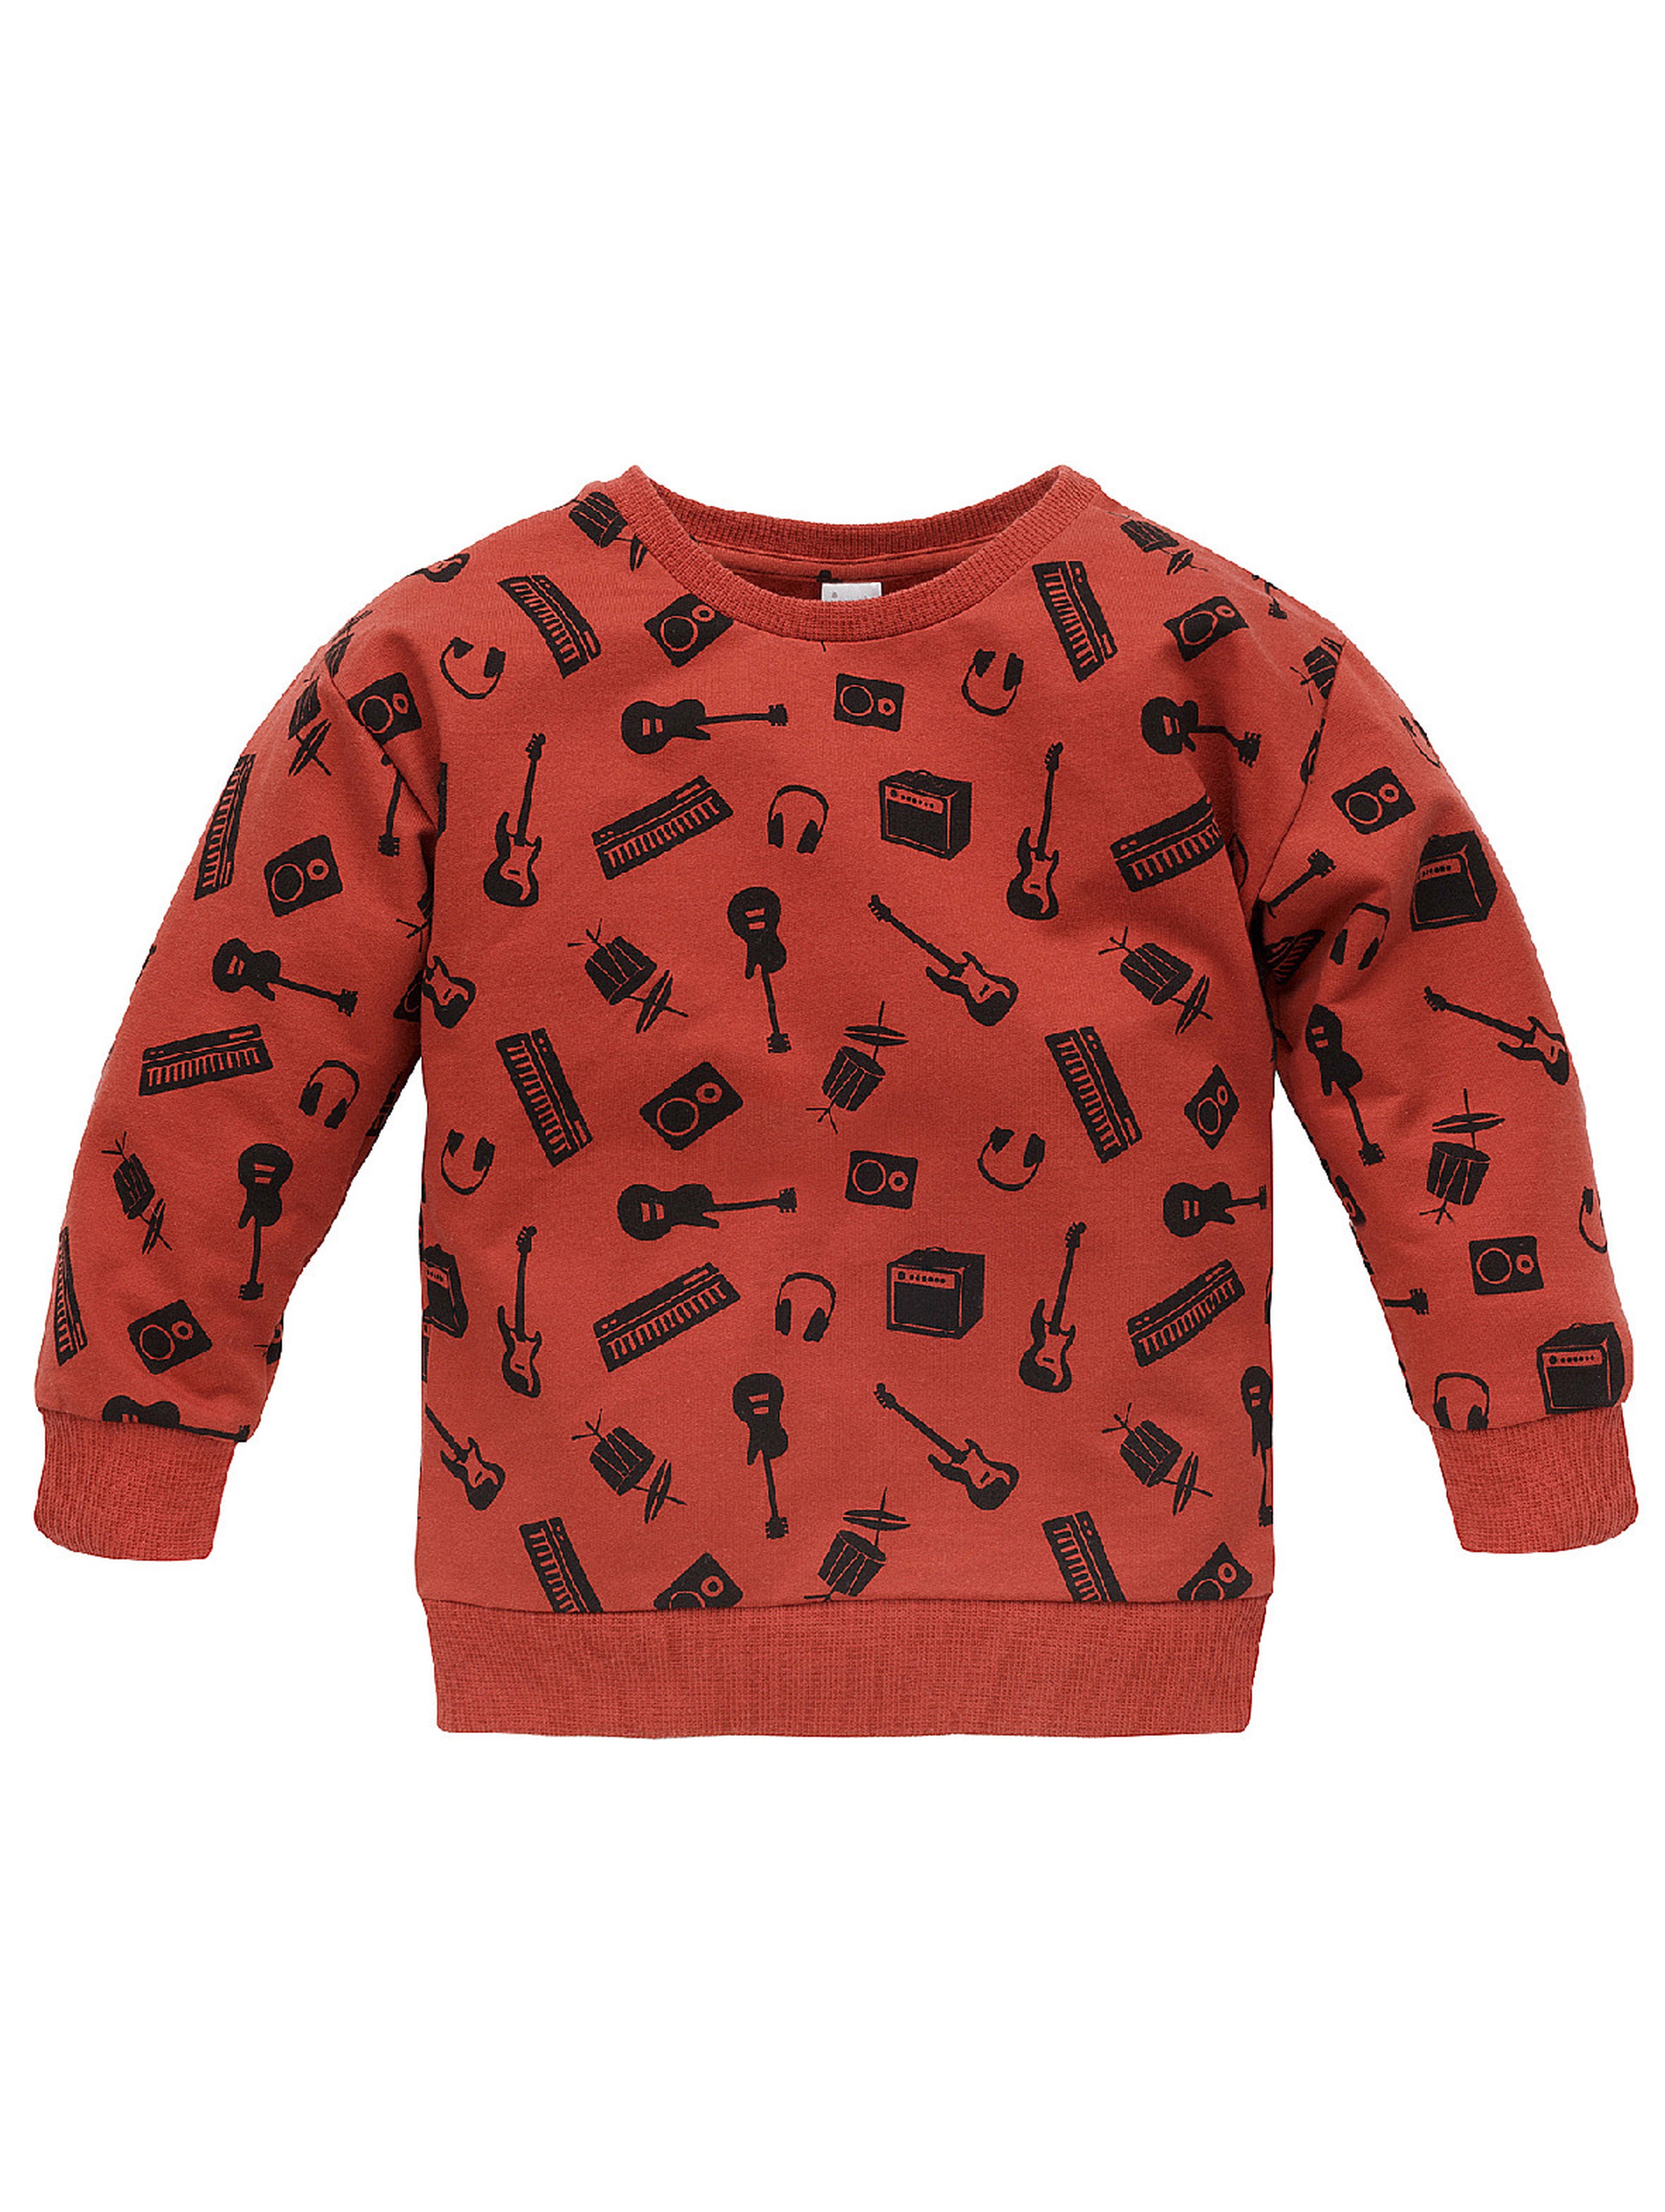 Bluza dla chłopca z bawełny Let's rock czerwona